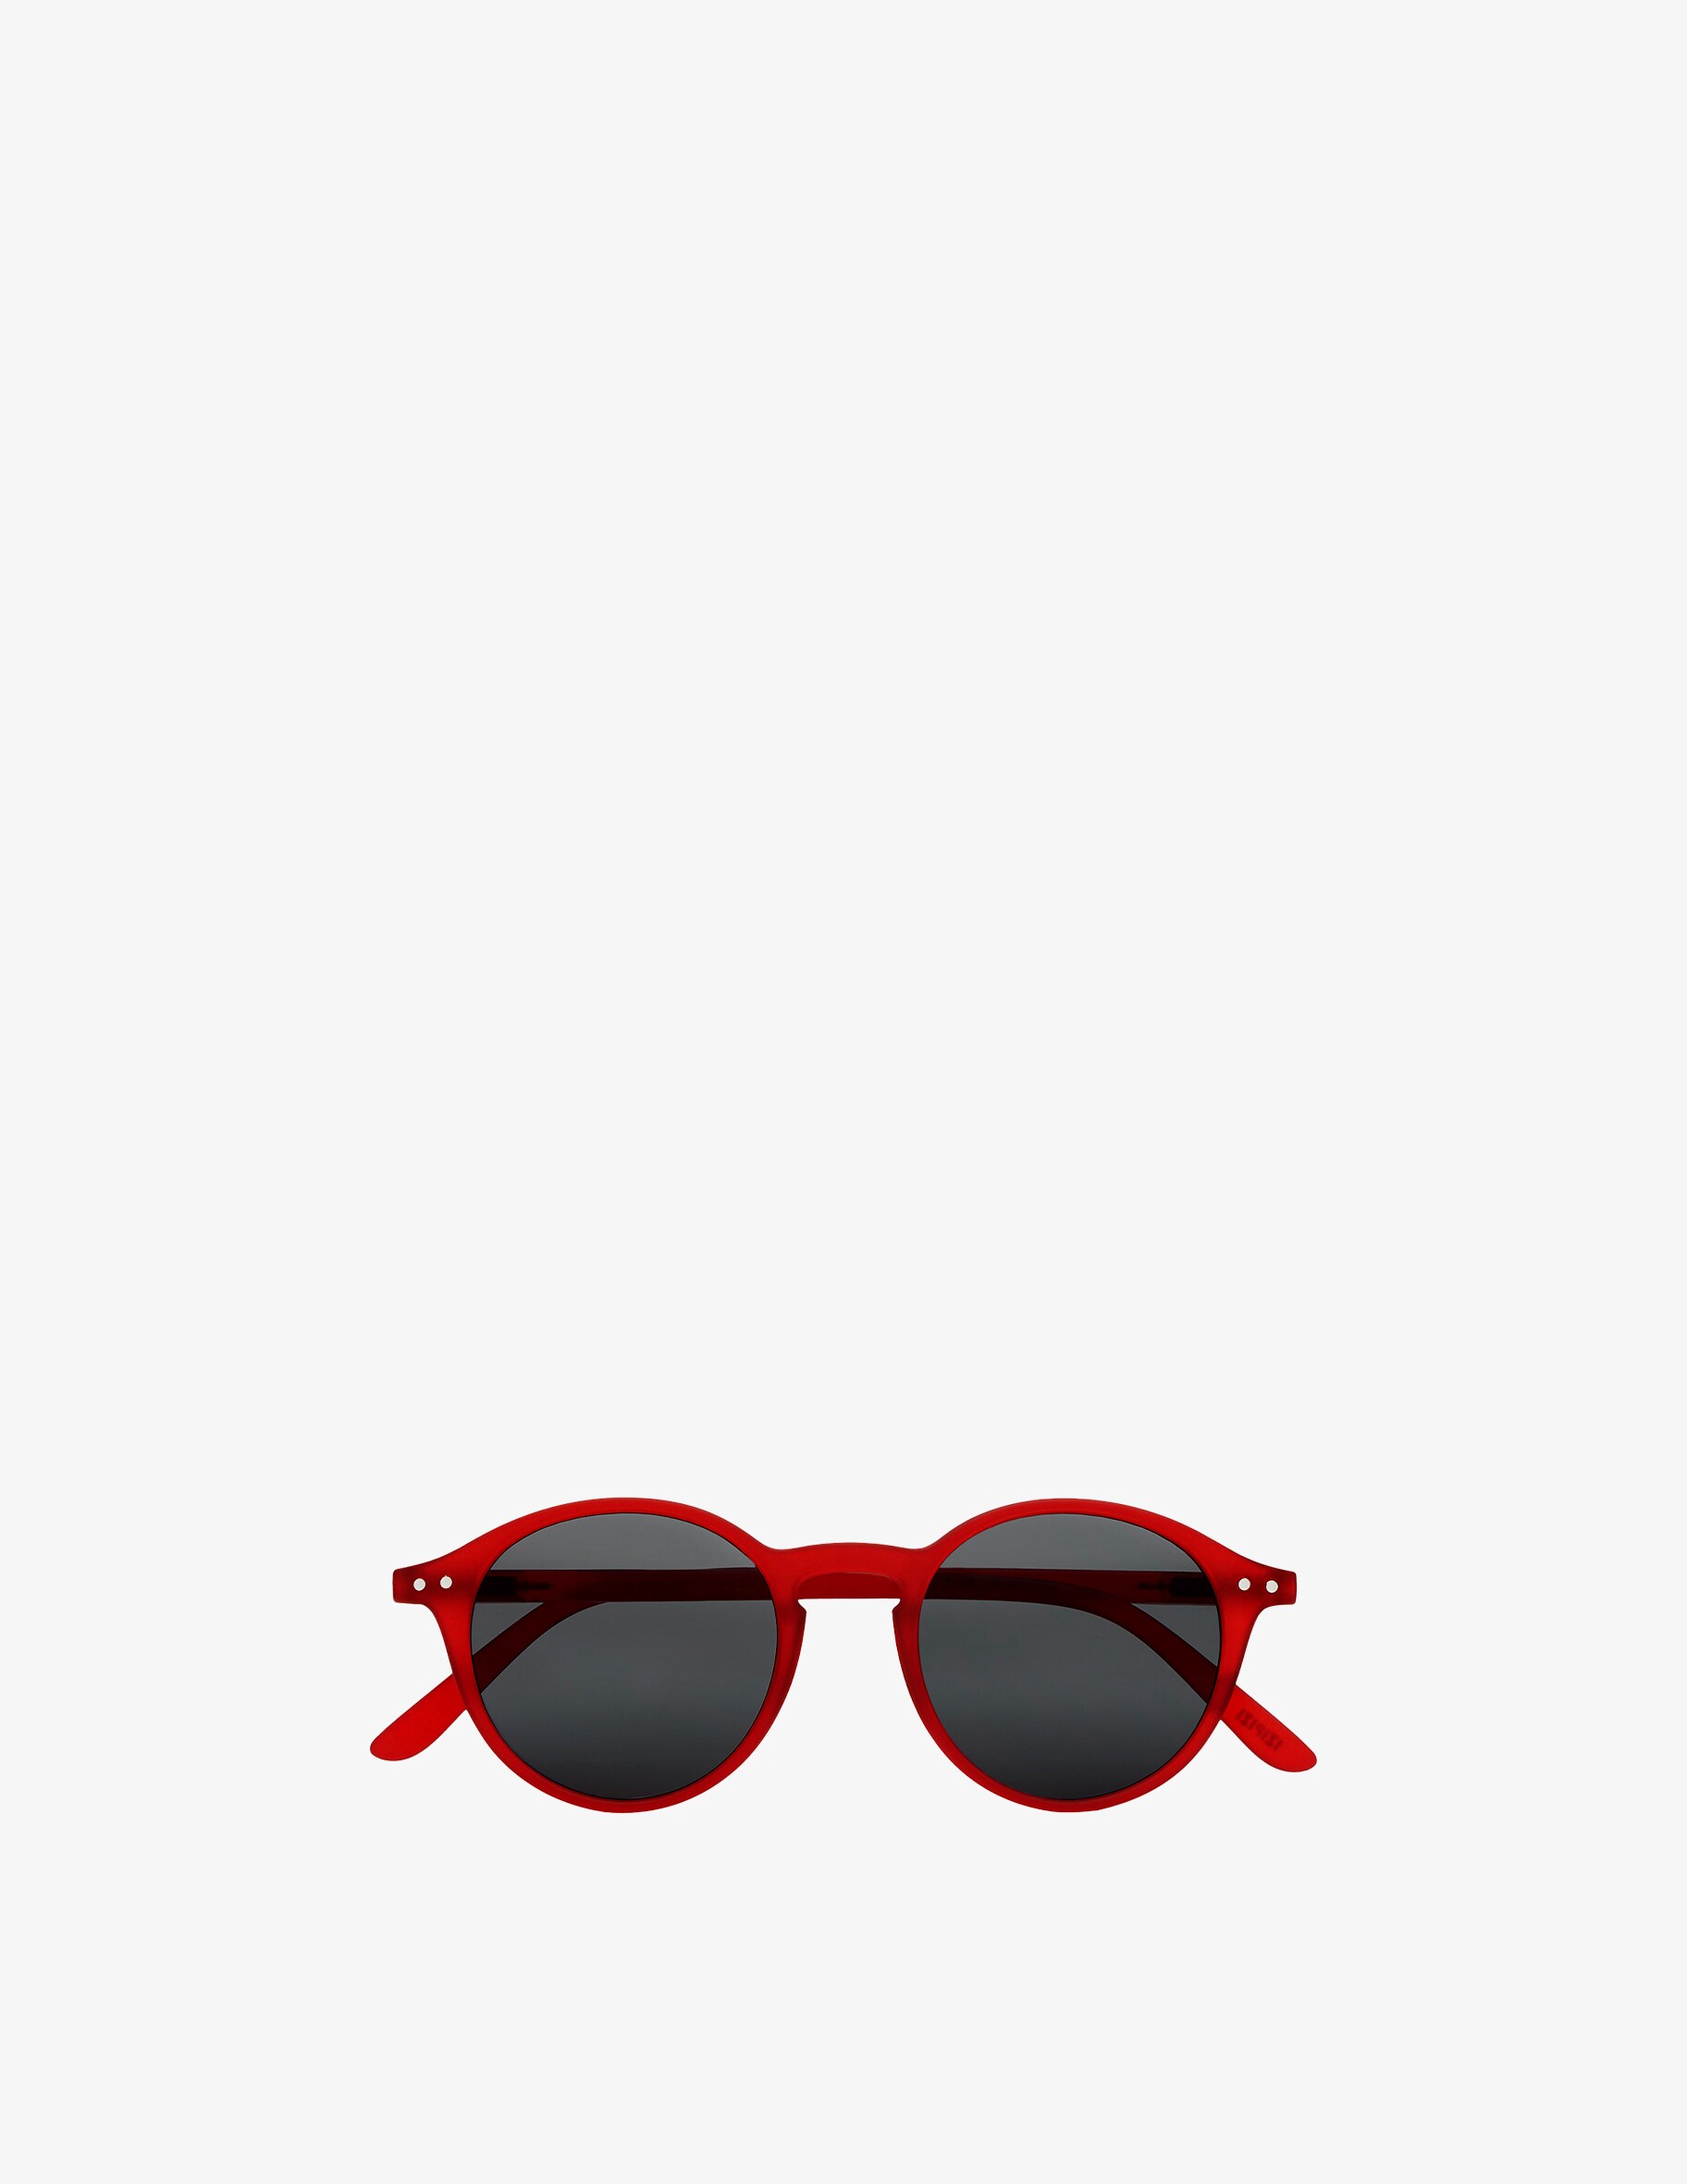 Солнцезащитные очки Модель #D Красные Izipizi цена и фото